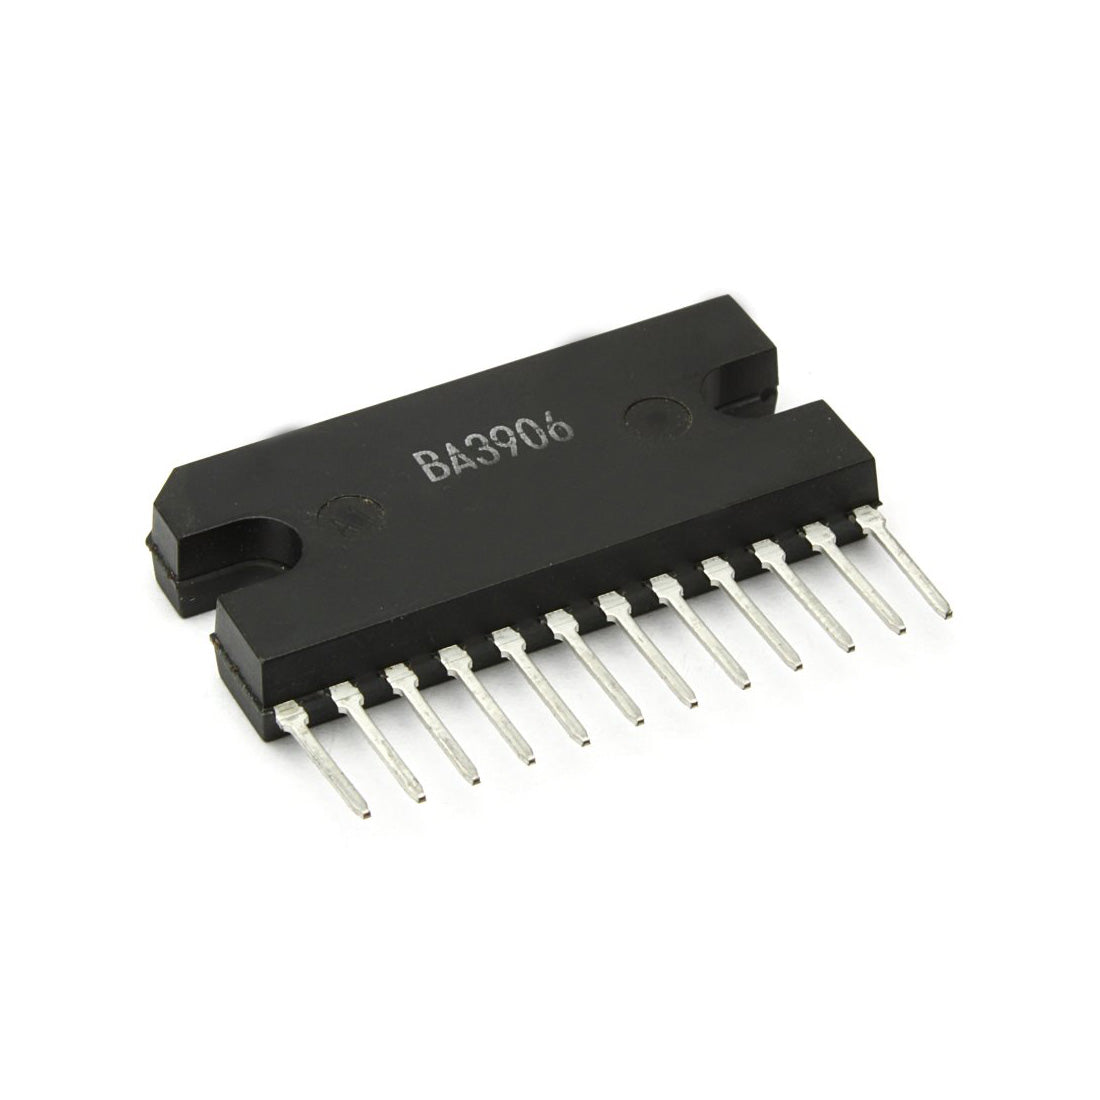 BA3906 Componente elettronico, circuito integrato, transistor, 12 contatti